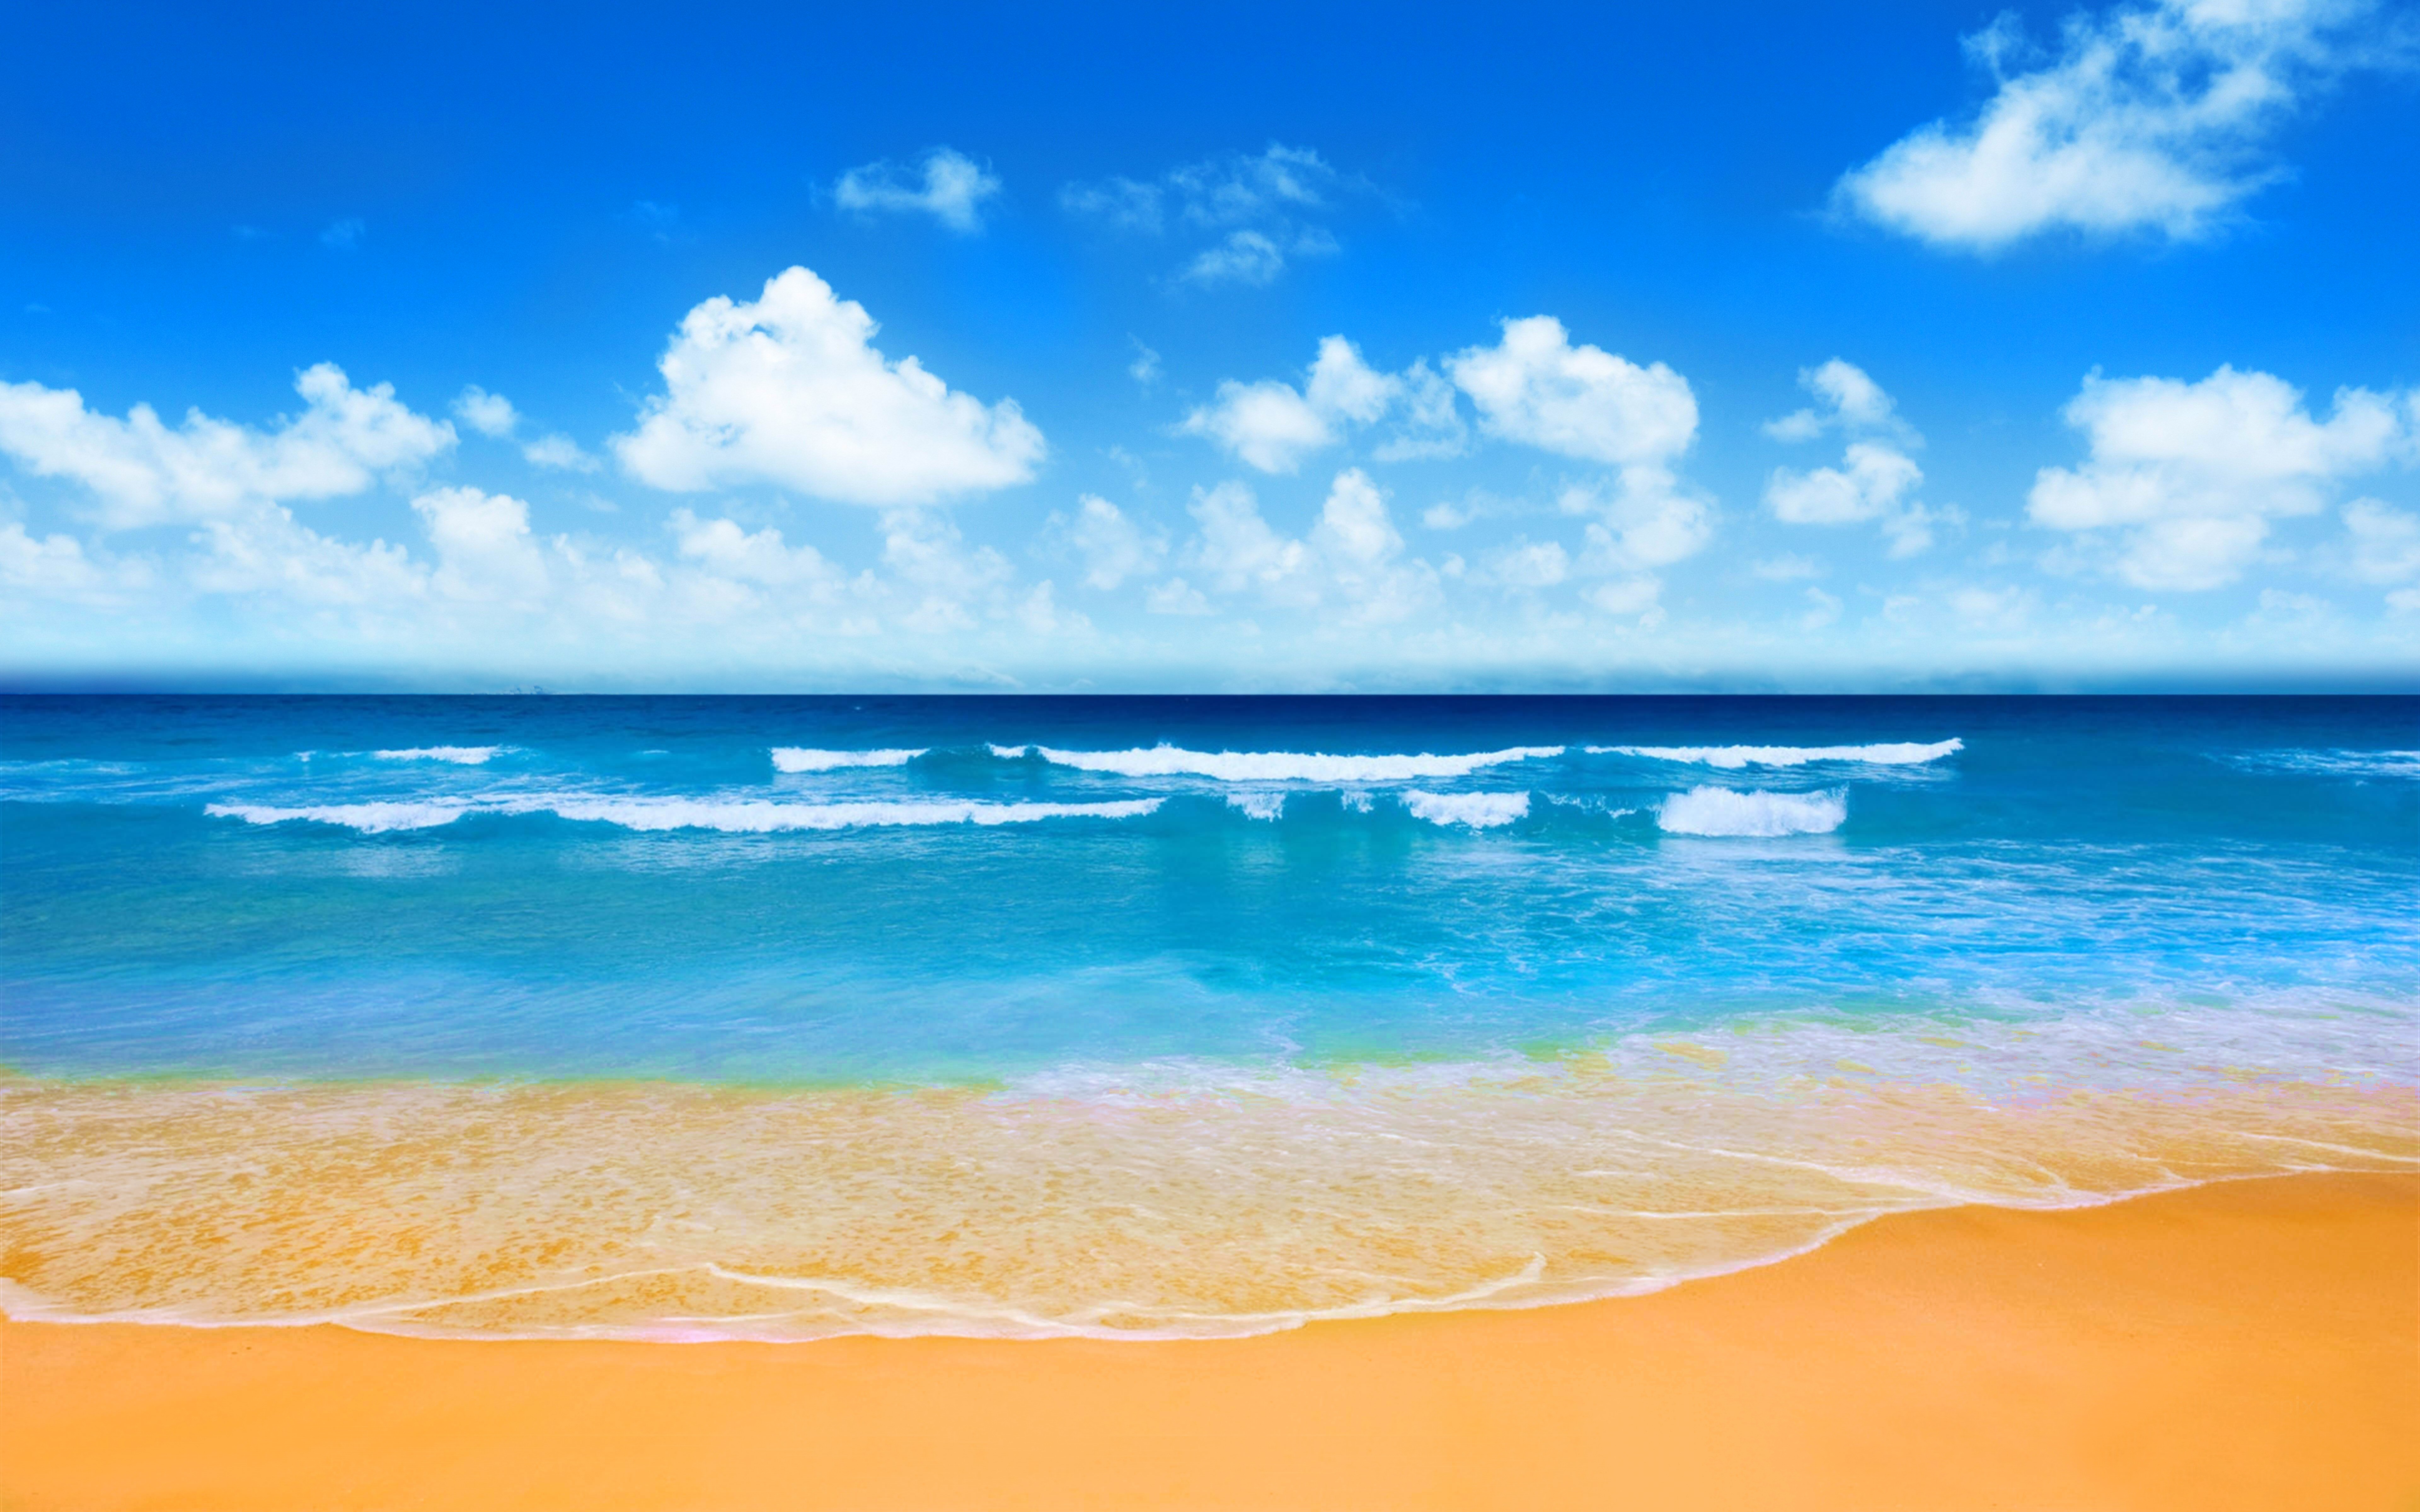 Hình nền biển 8k: Bạn đang tìm kiếm một hình nền biển có độ phân giải cao để hiển thị trên màn hình 8K? Hãy xem ngay những hình ảnh liên quan đến từ khóa này, với độ chi tiết và màu sắc chân thực, sẽ làm bạn say đắm trong không gian thiên nhiên tuyệt đẹp. 